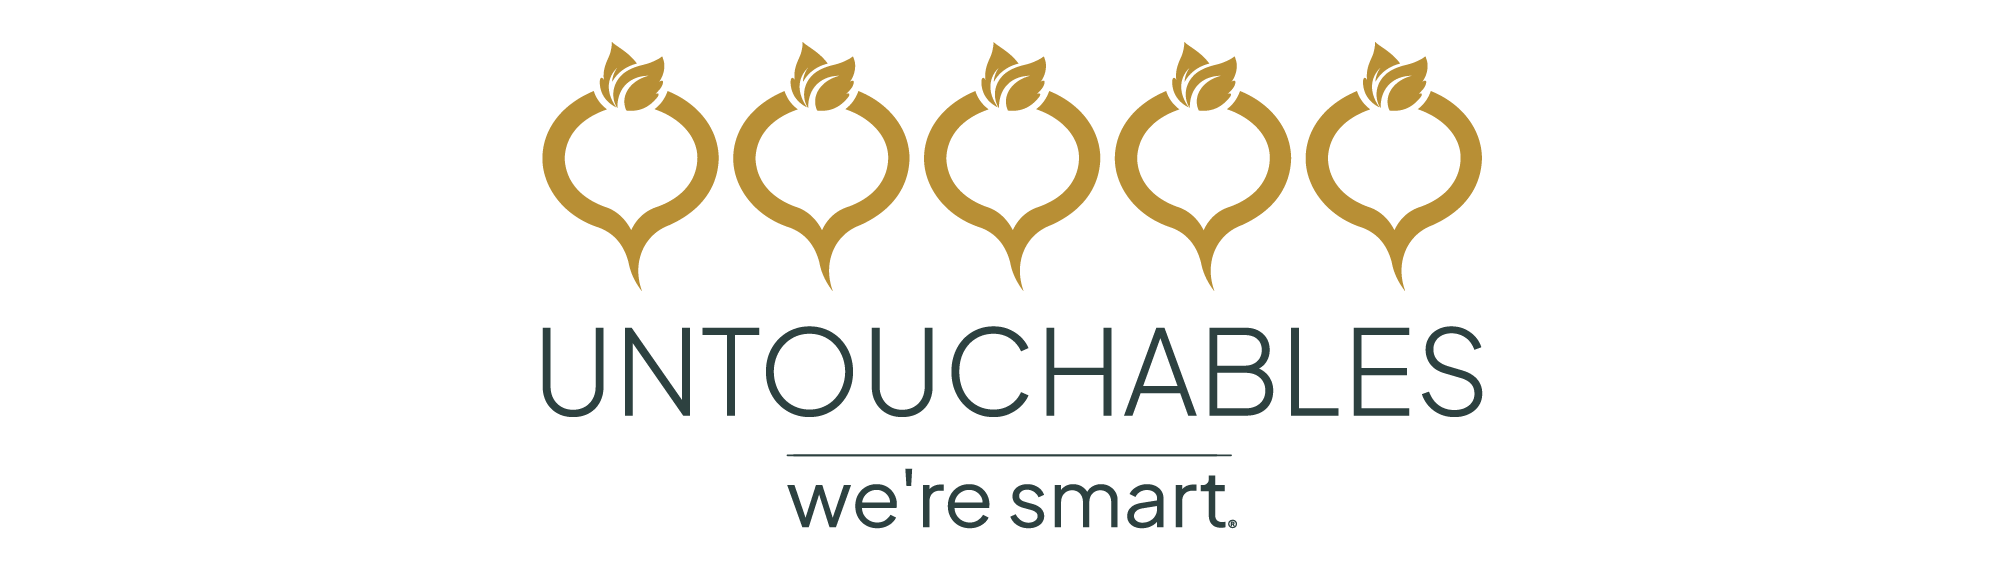 we're smart untouchables logo